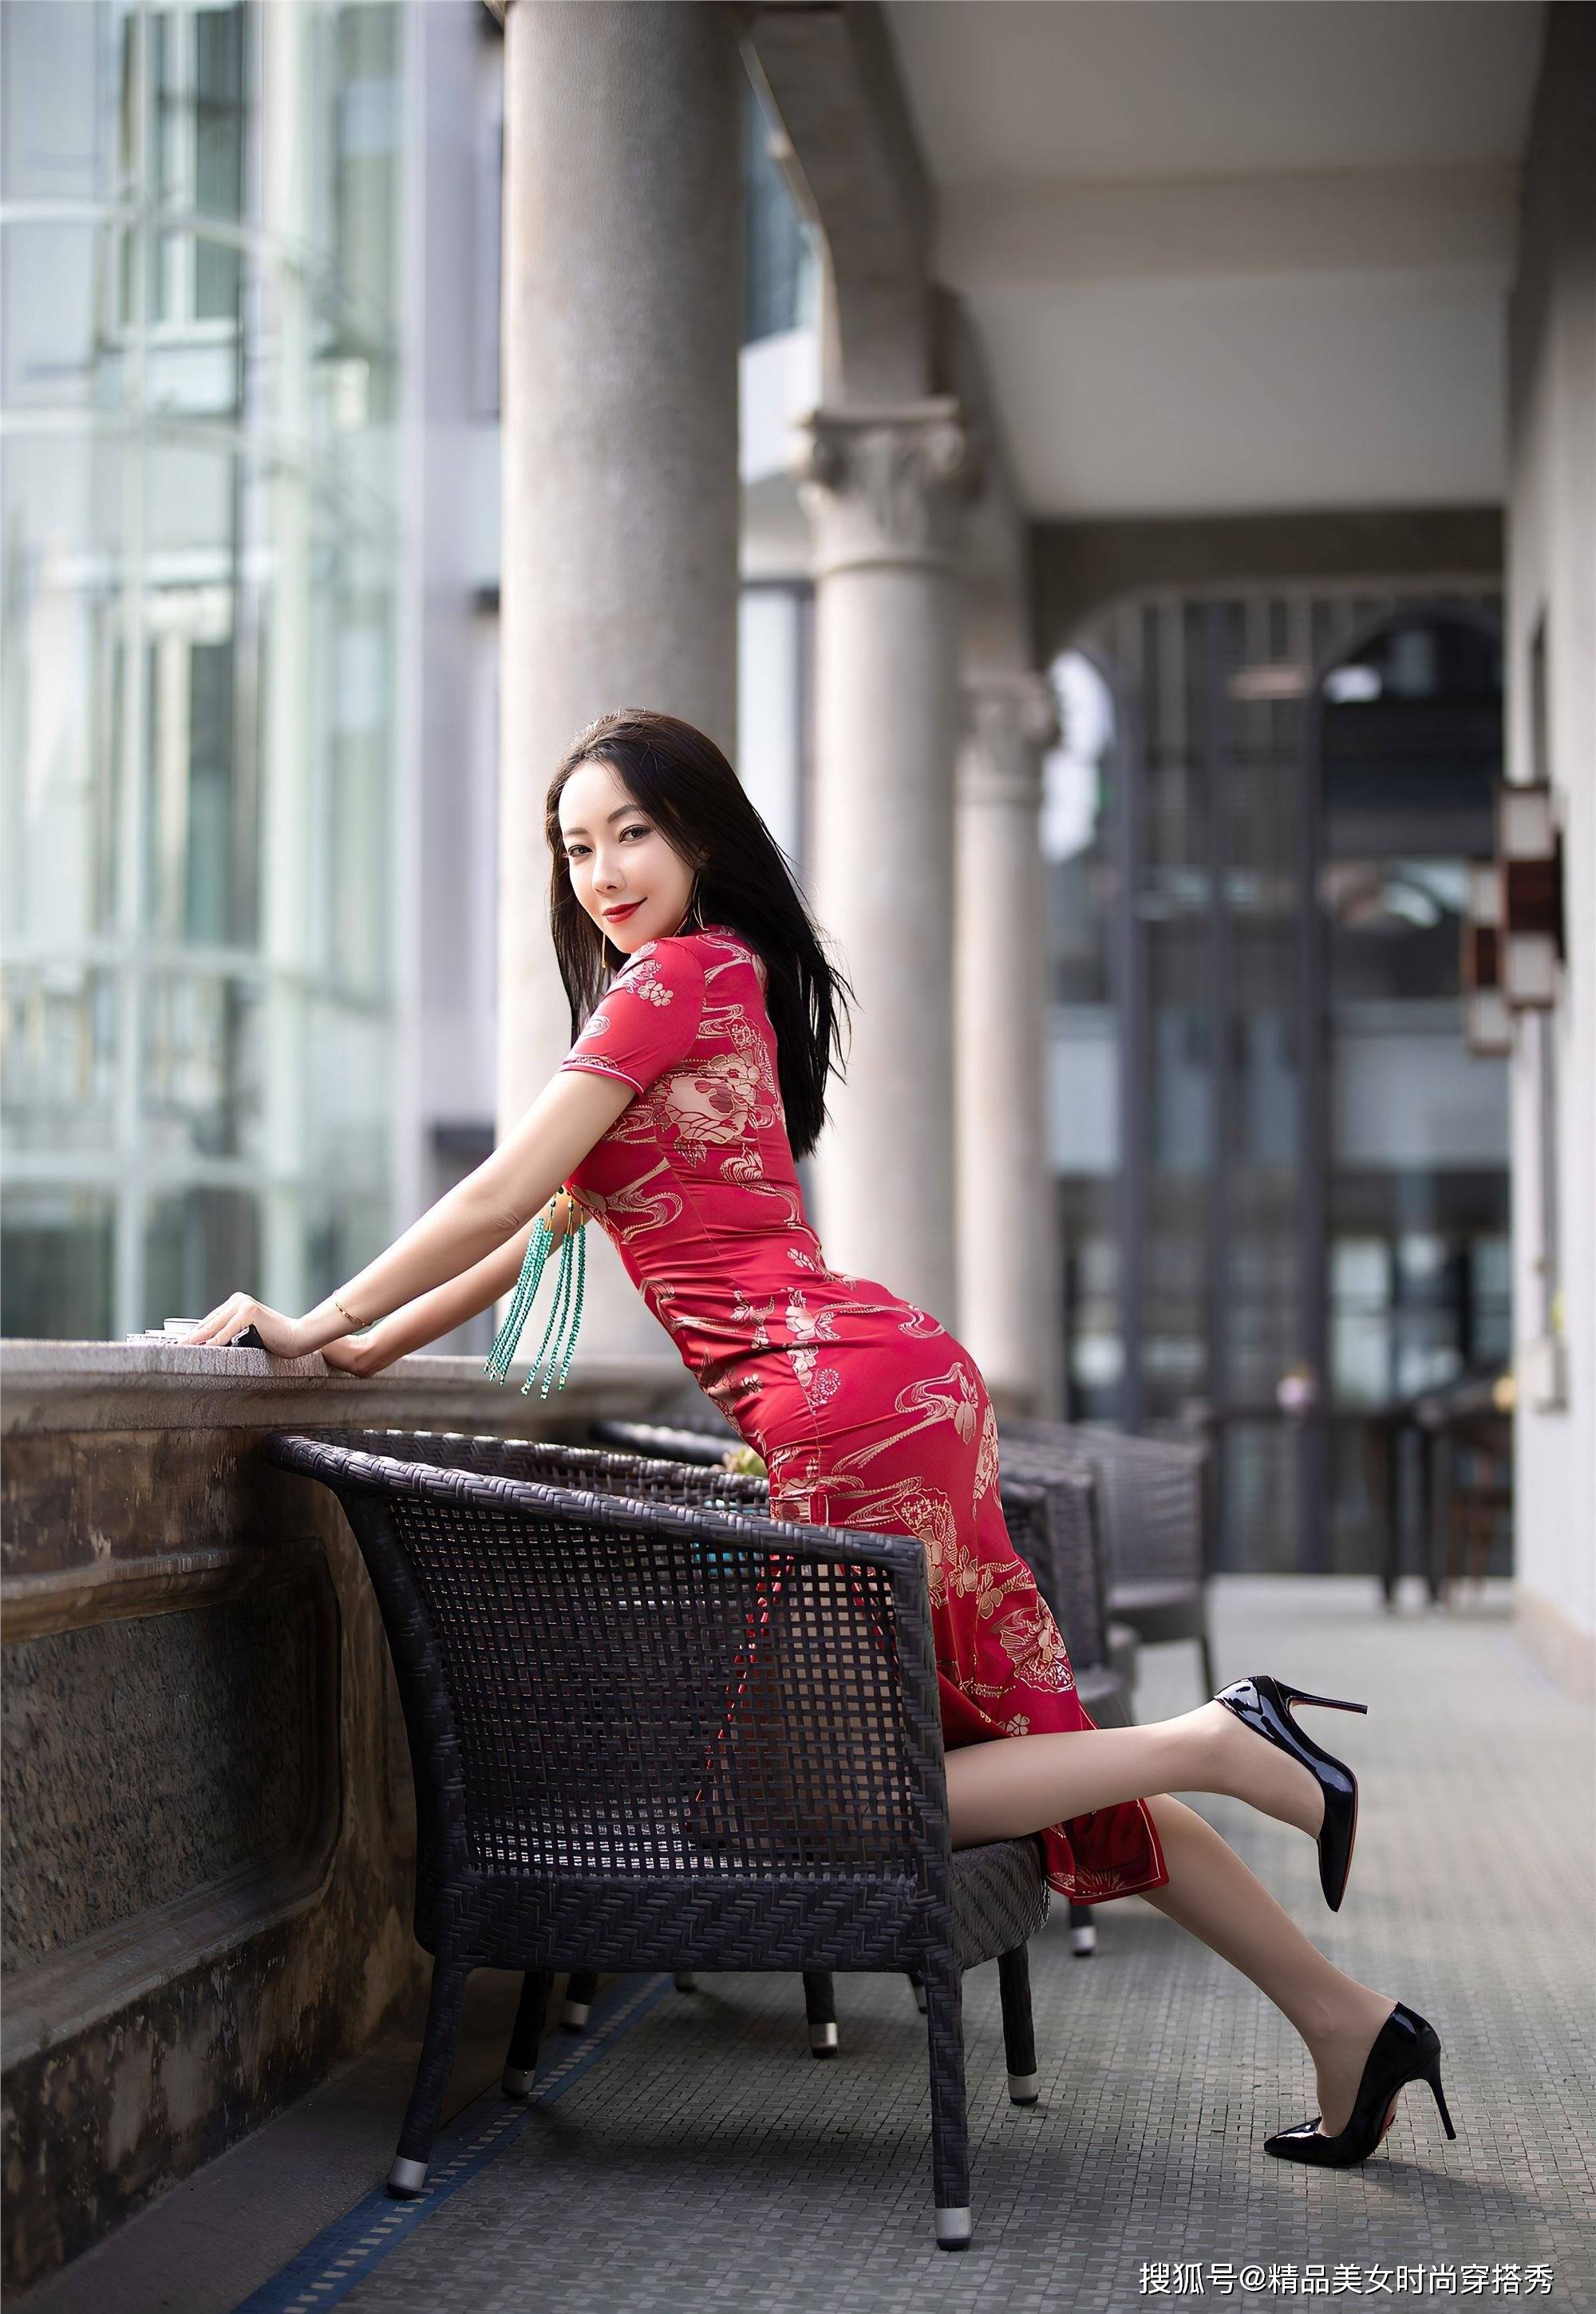 红色旗袍连衣裙热情洋溢,搭配黑色高跟鞋性感迷人彰显女性魅力